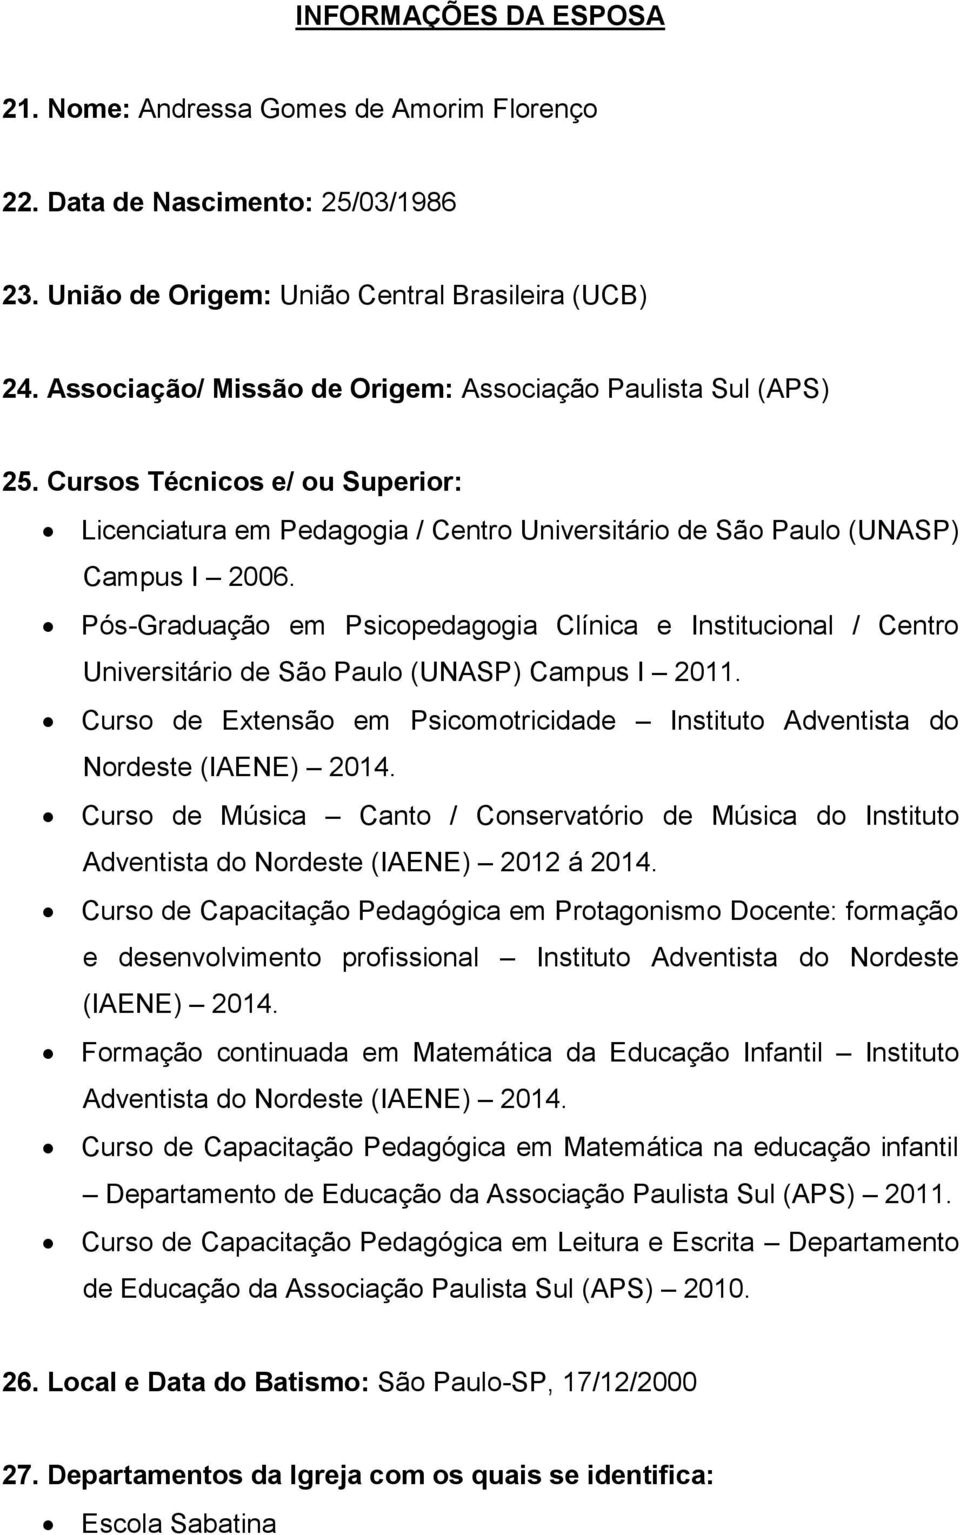 Pós-Graduação em Psicopedagogia Clínica e Institucional / Centro Universitário de São Paulo (UNASP) Campus I 2011. Curso de Extensão em Psicomotricidade Instituto Adventista do Nordeste (IAENE) 2014.